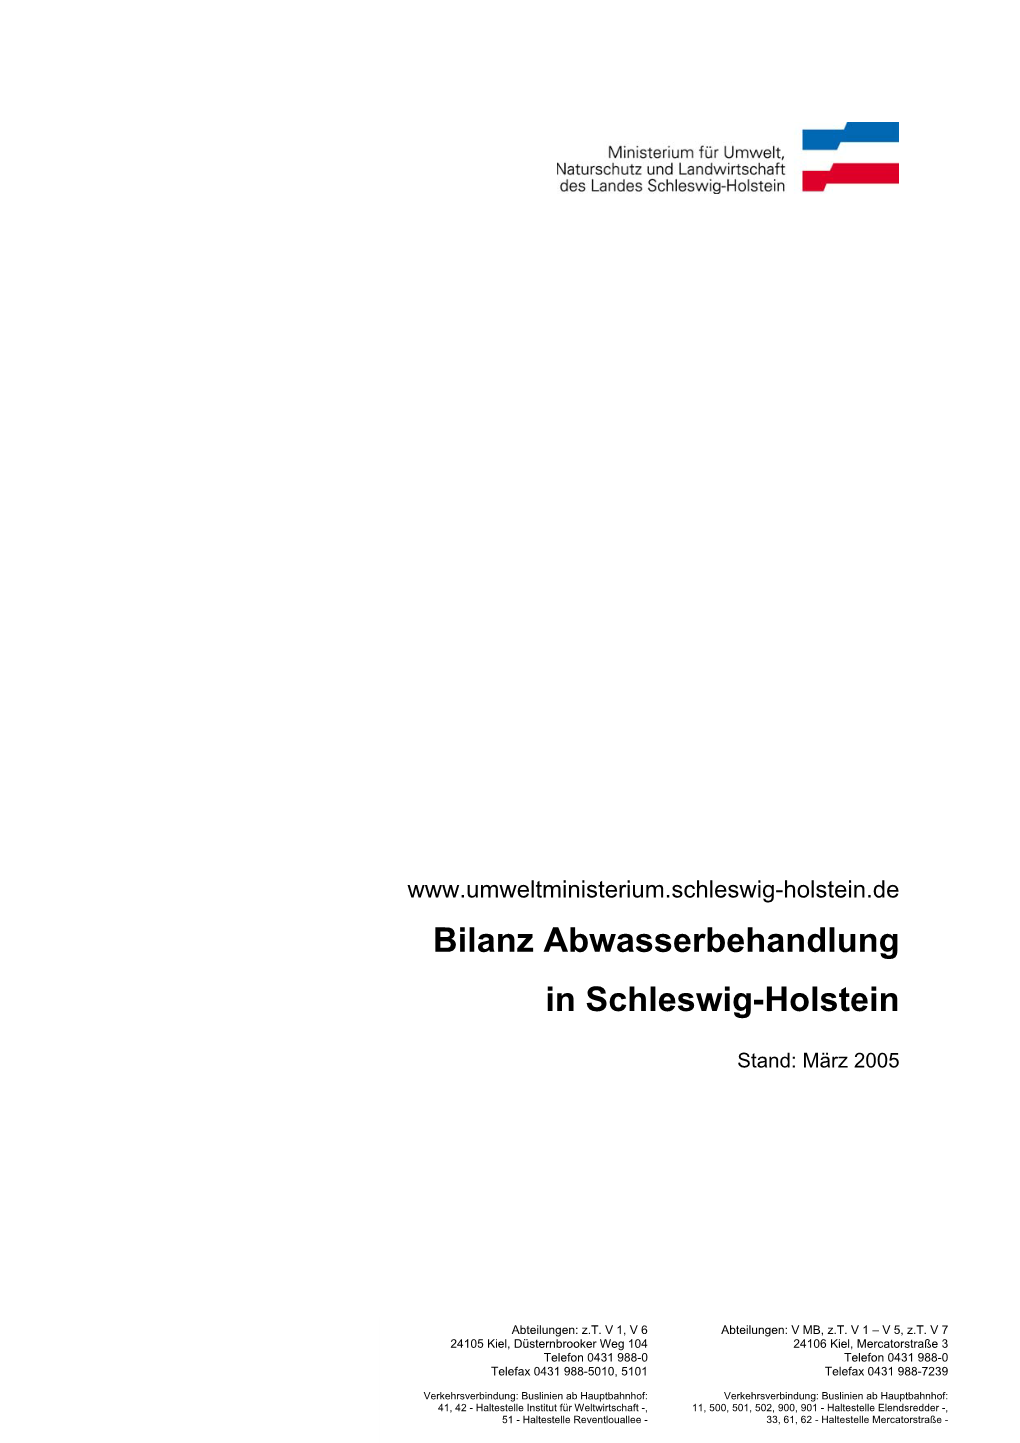 Bilanz Abwasserbehandlung in Schleswig-Holstein